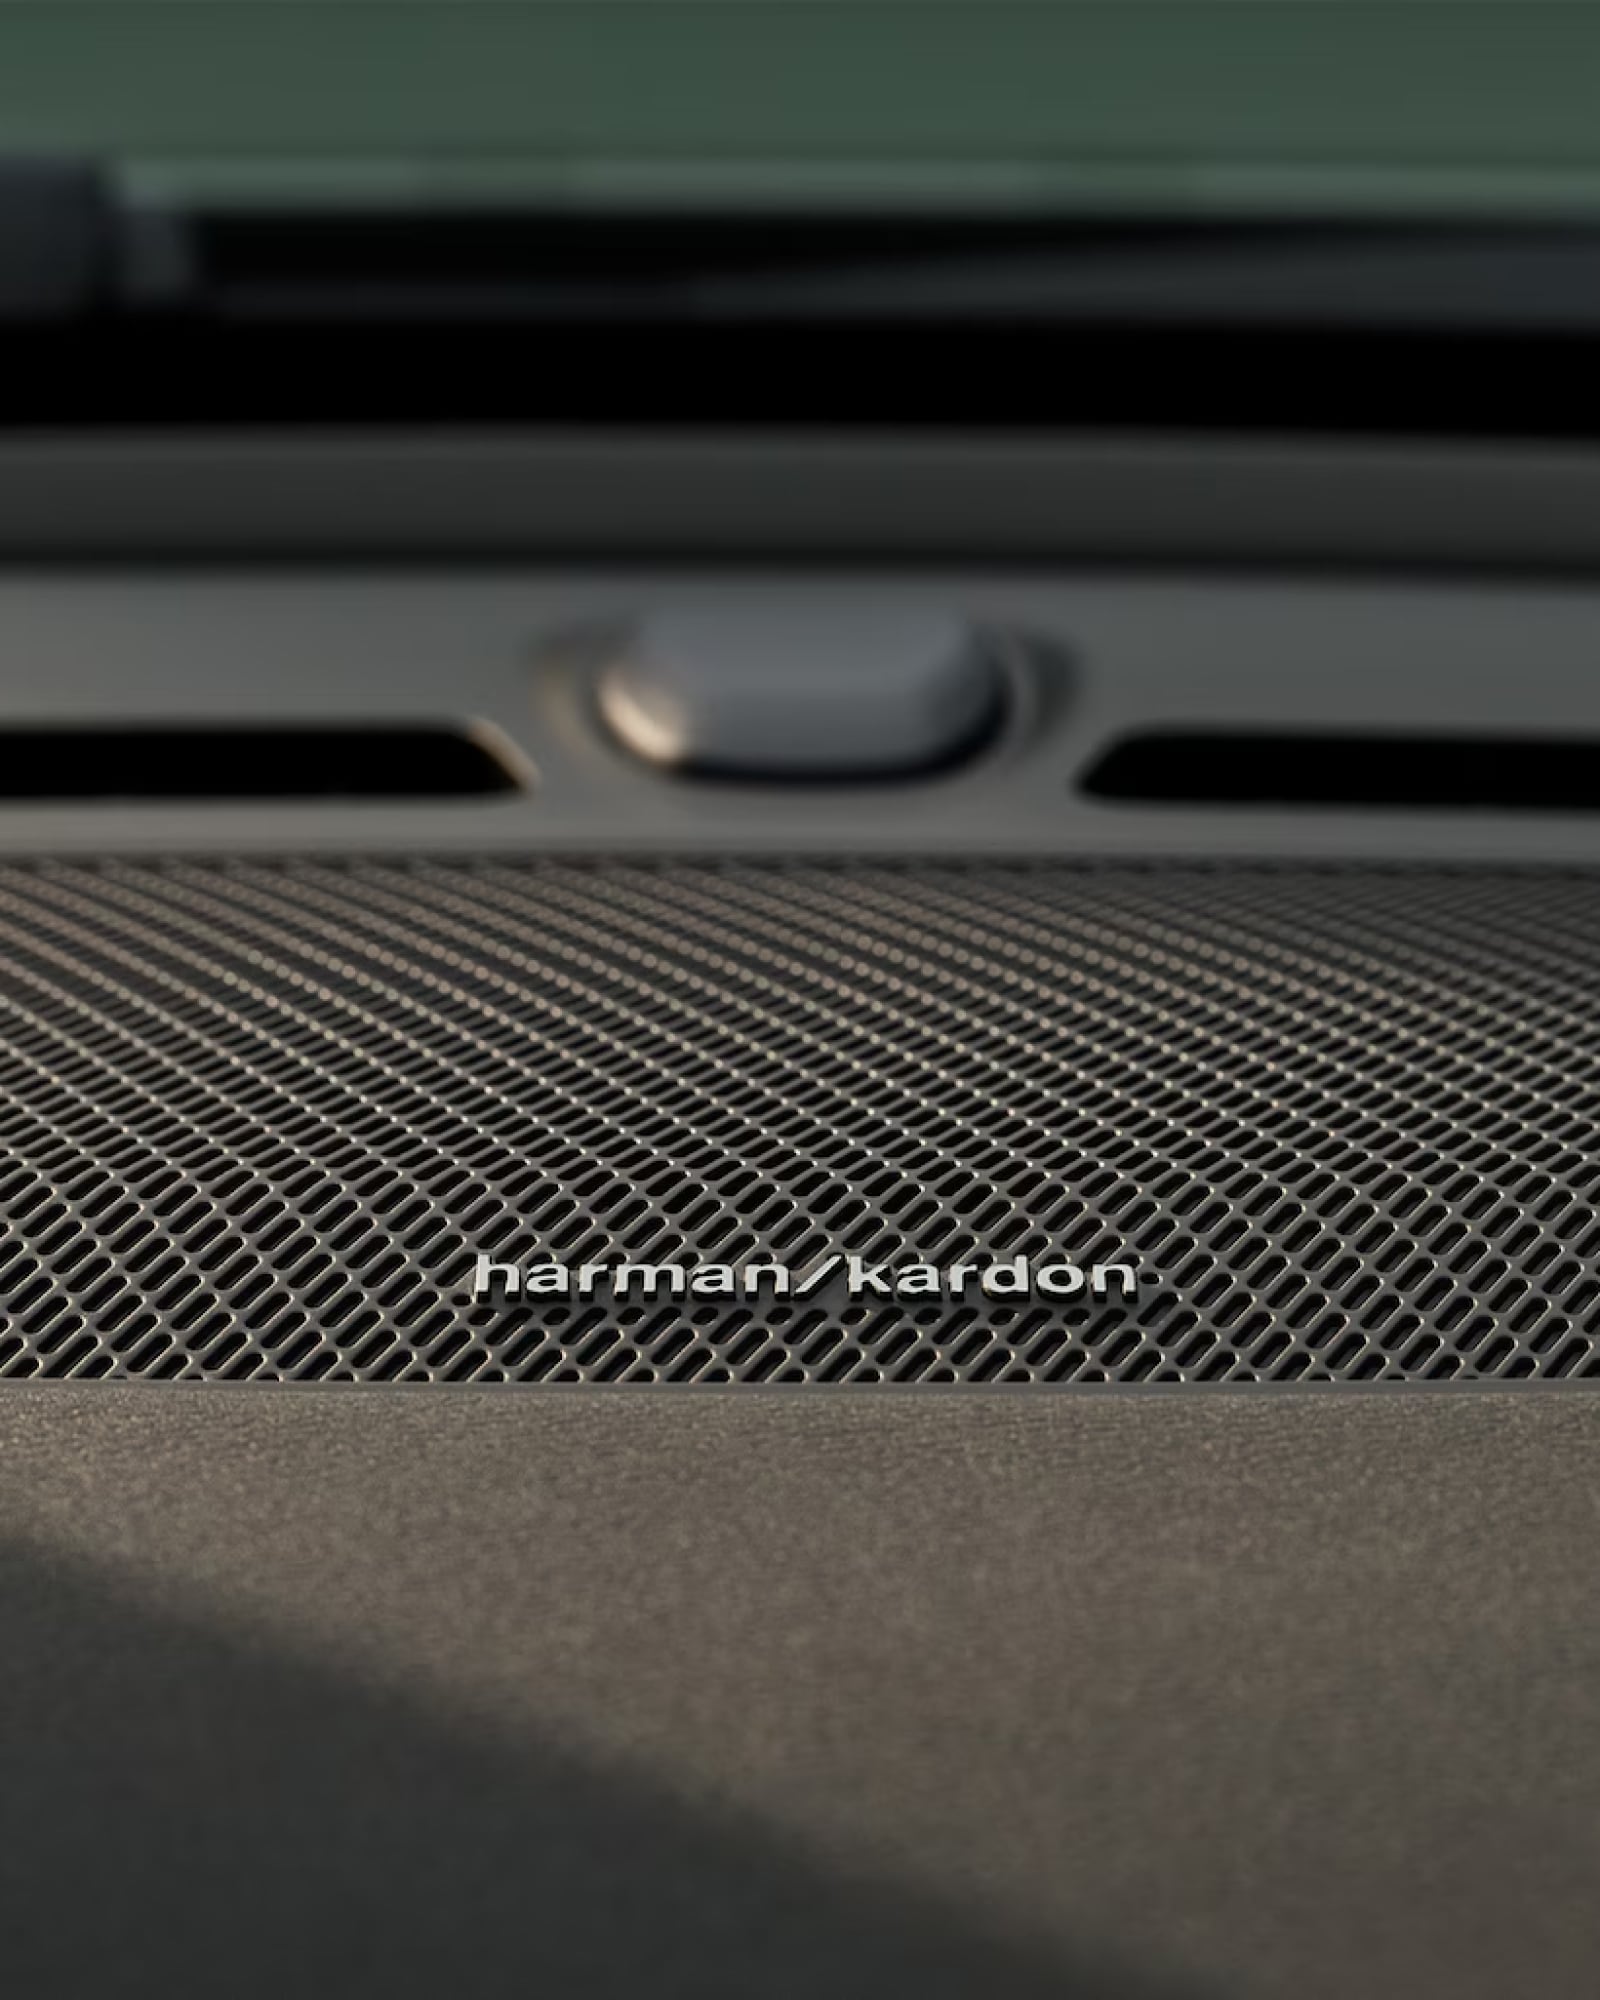 Szczegółowy obraz głośnika Harman Kardon w Volvo XC40